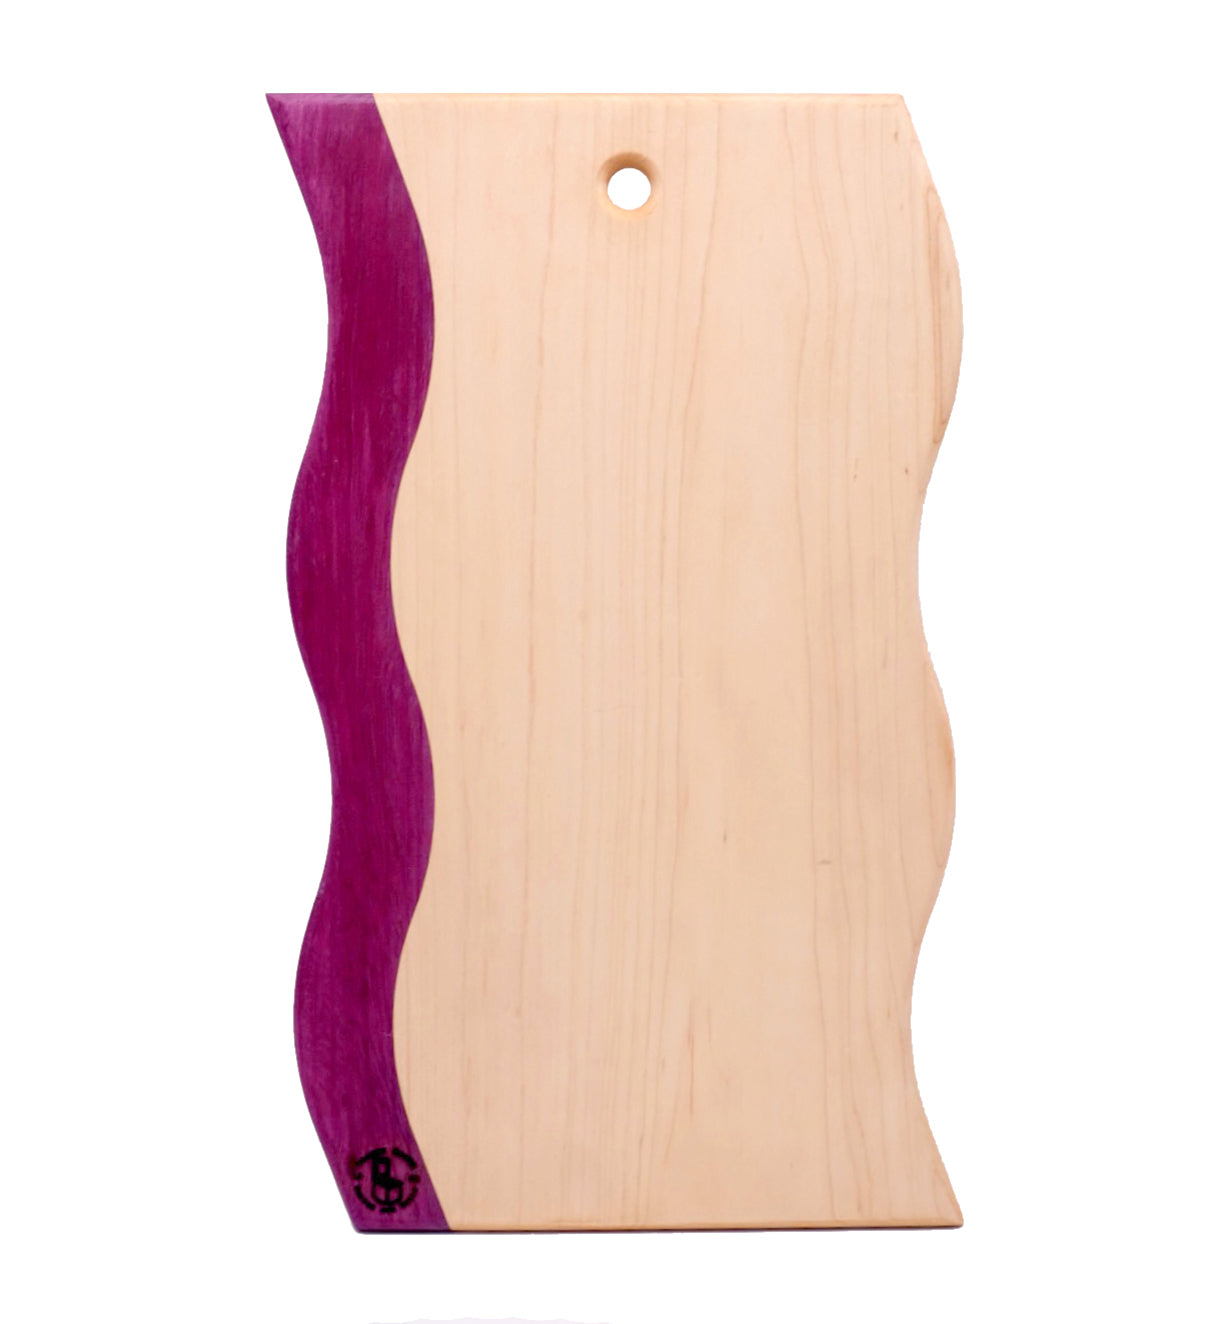 wiggle shaped cutting board